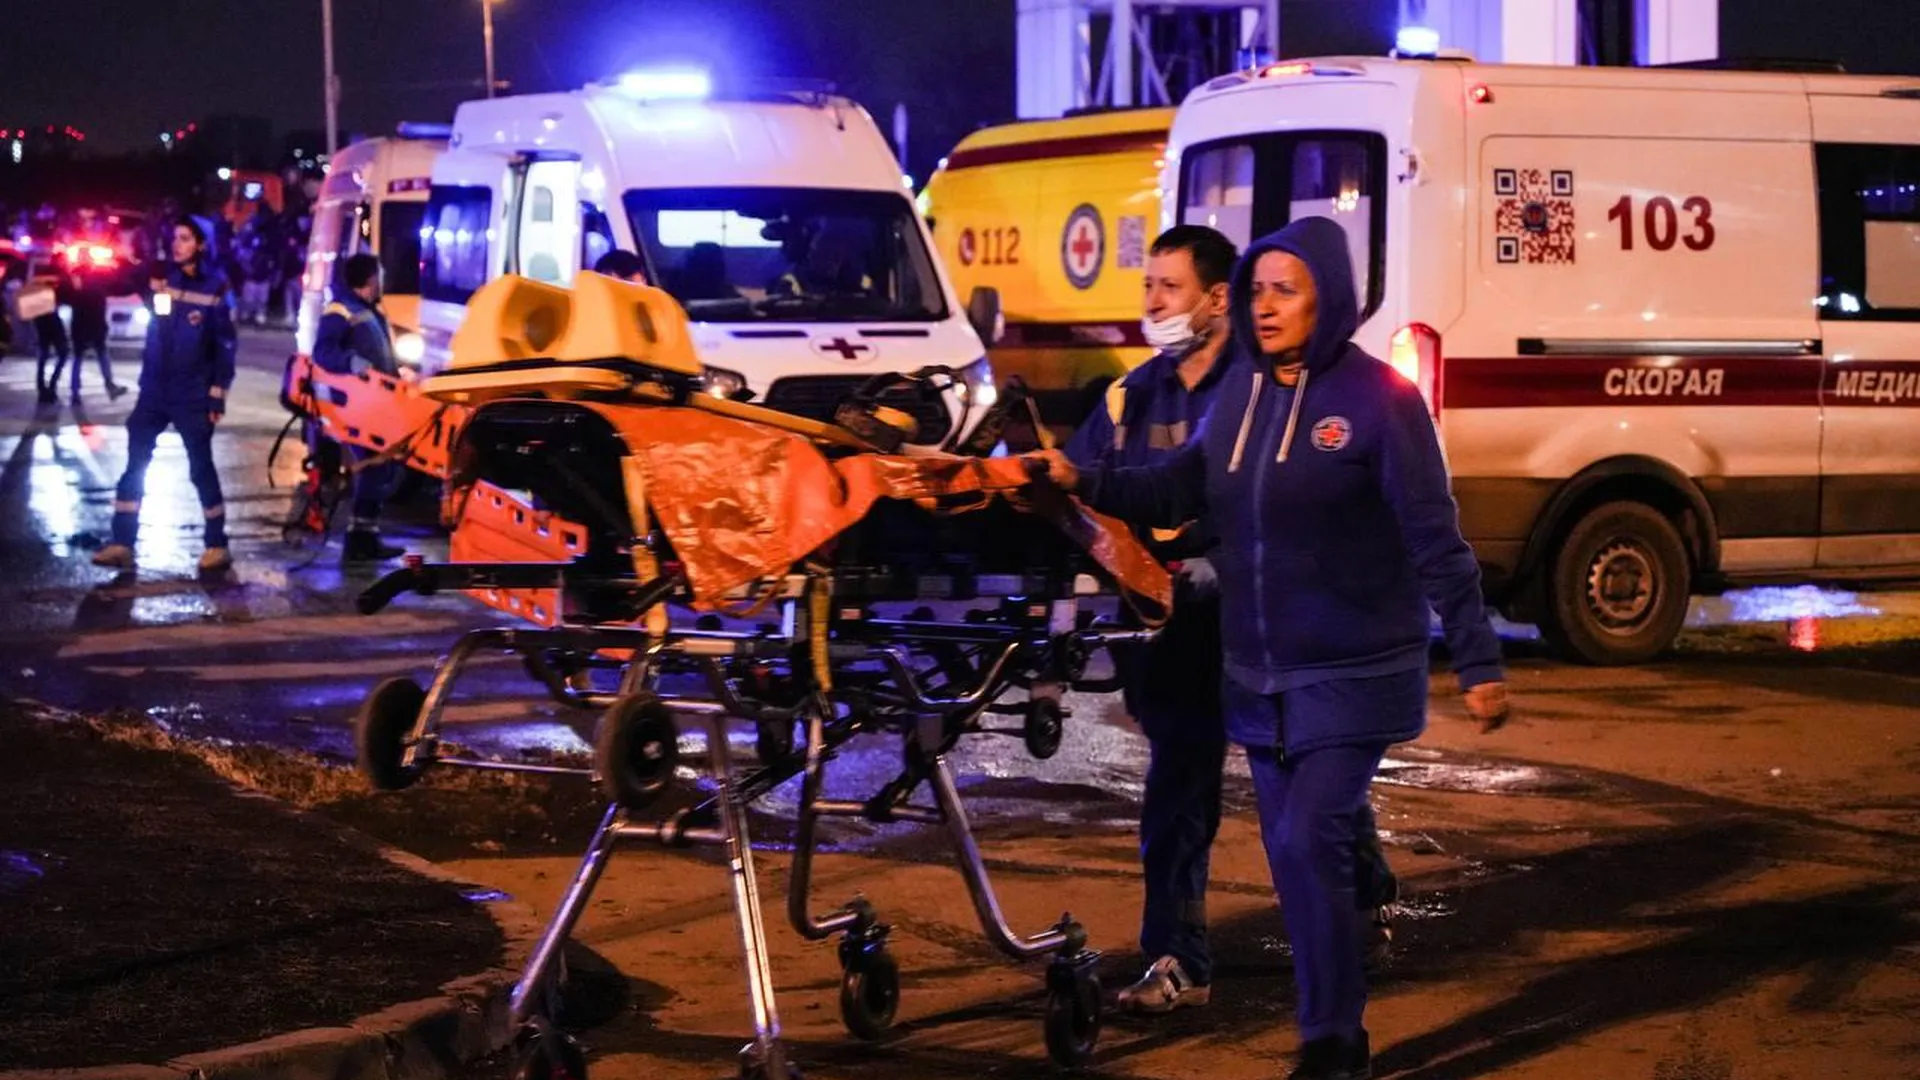 Дополнительный персонал привлекли в Подмосковье для оказания помощи пострадавшим в ходе теракта в «Крокусе»